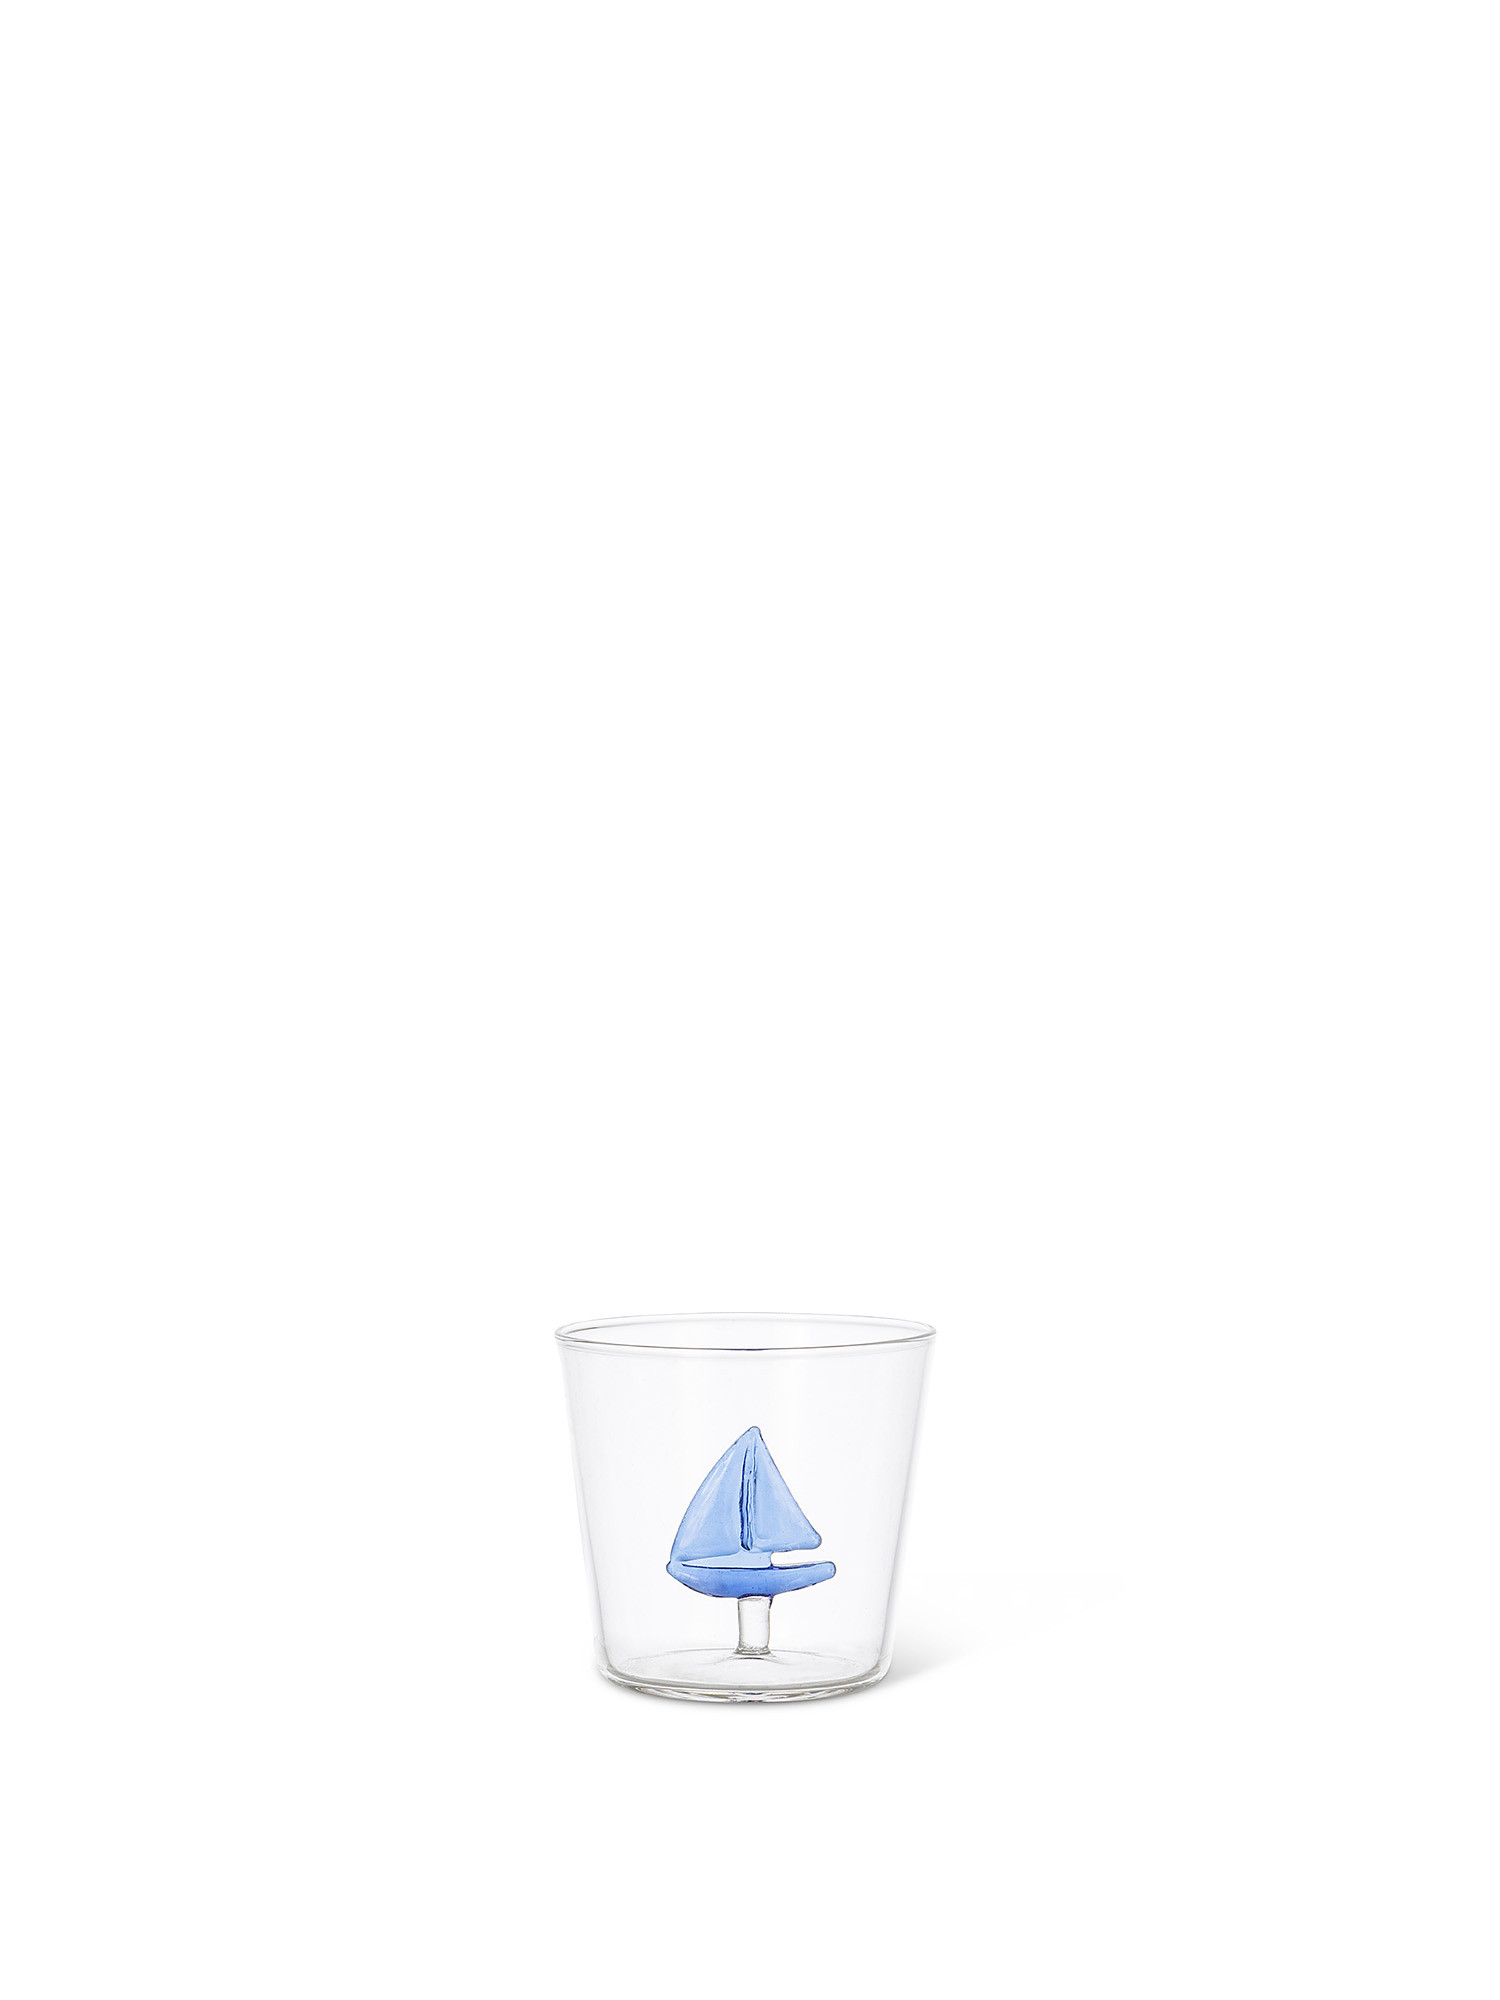 Bicchiere vetro dettaglio barchetta, Trasparente, large